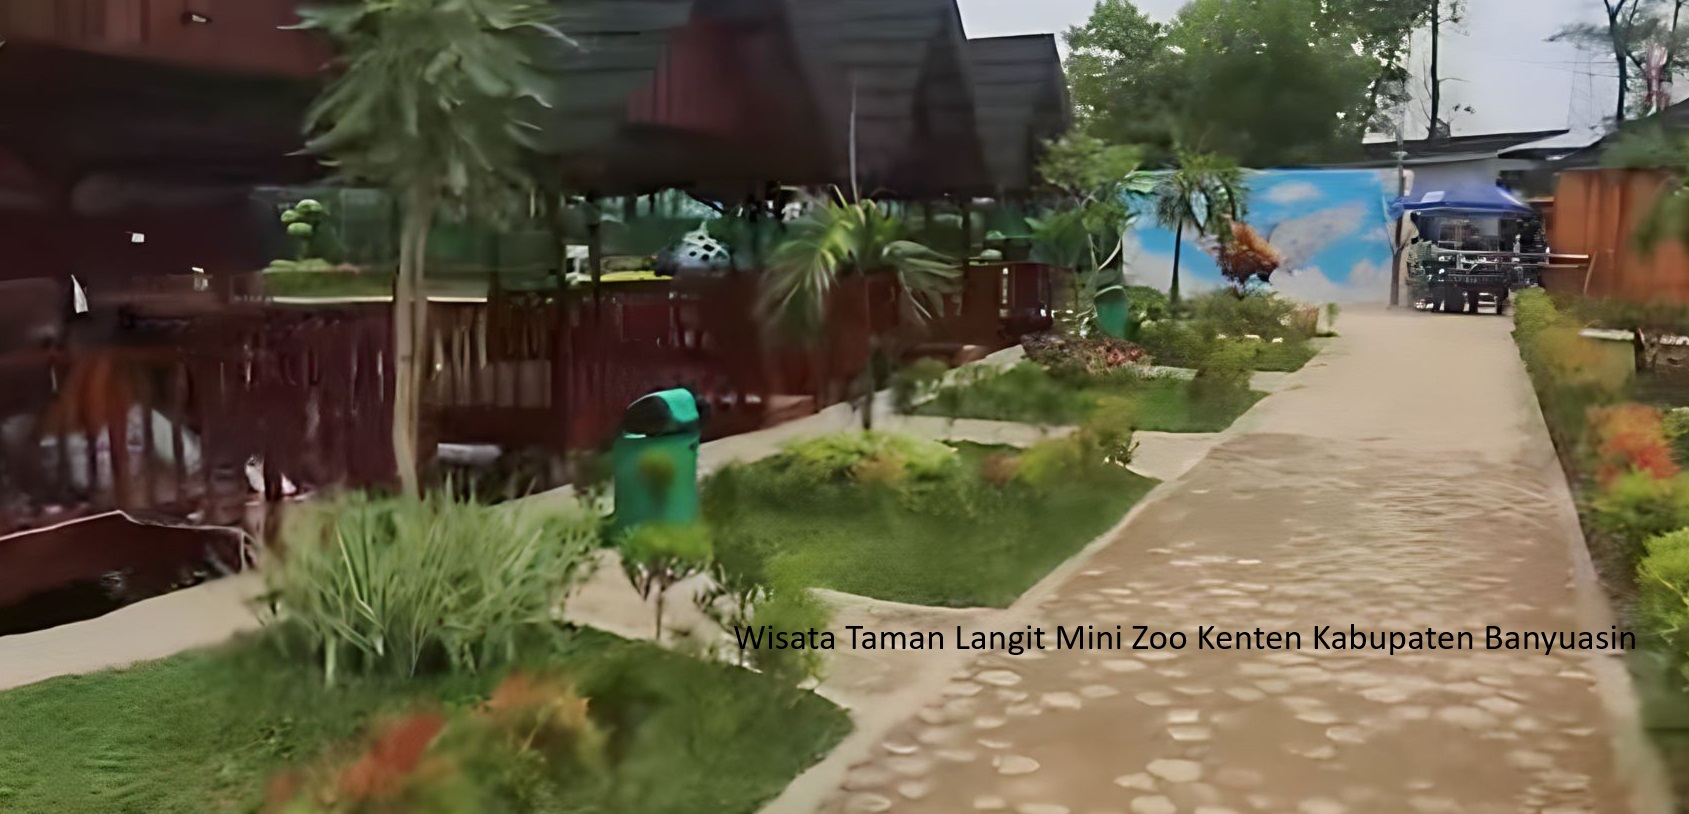 Taman Langit Mini Zoo Kenten: Destinasi Wisata Baru di Banyuasin yang Mengagumkan